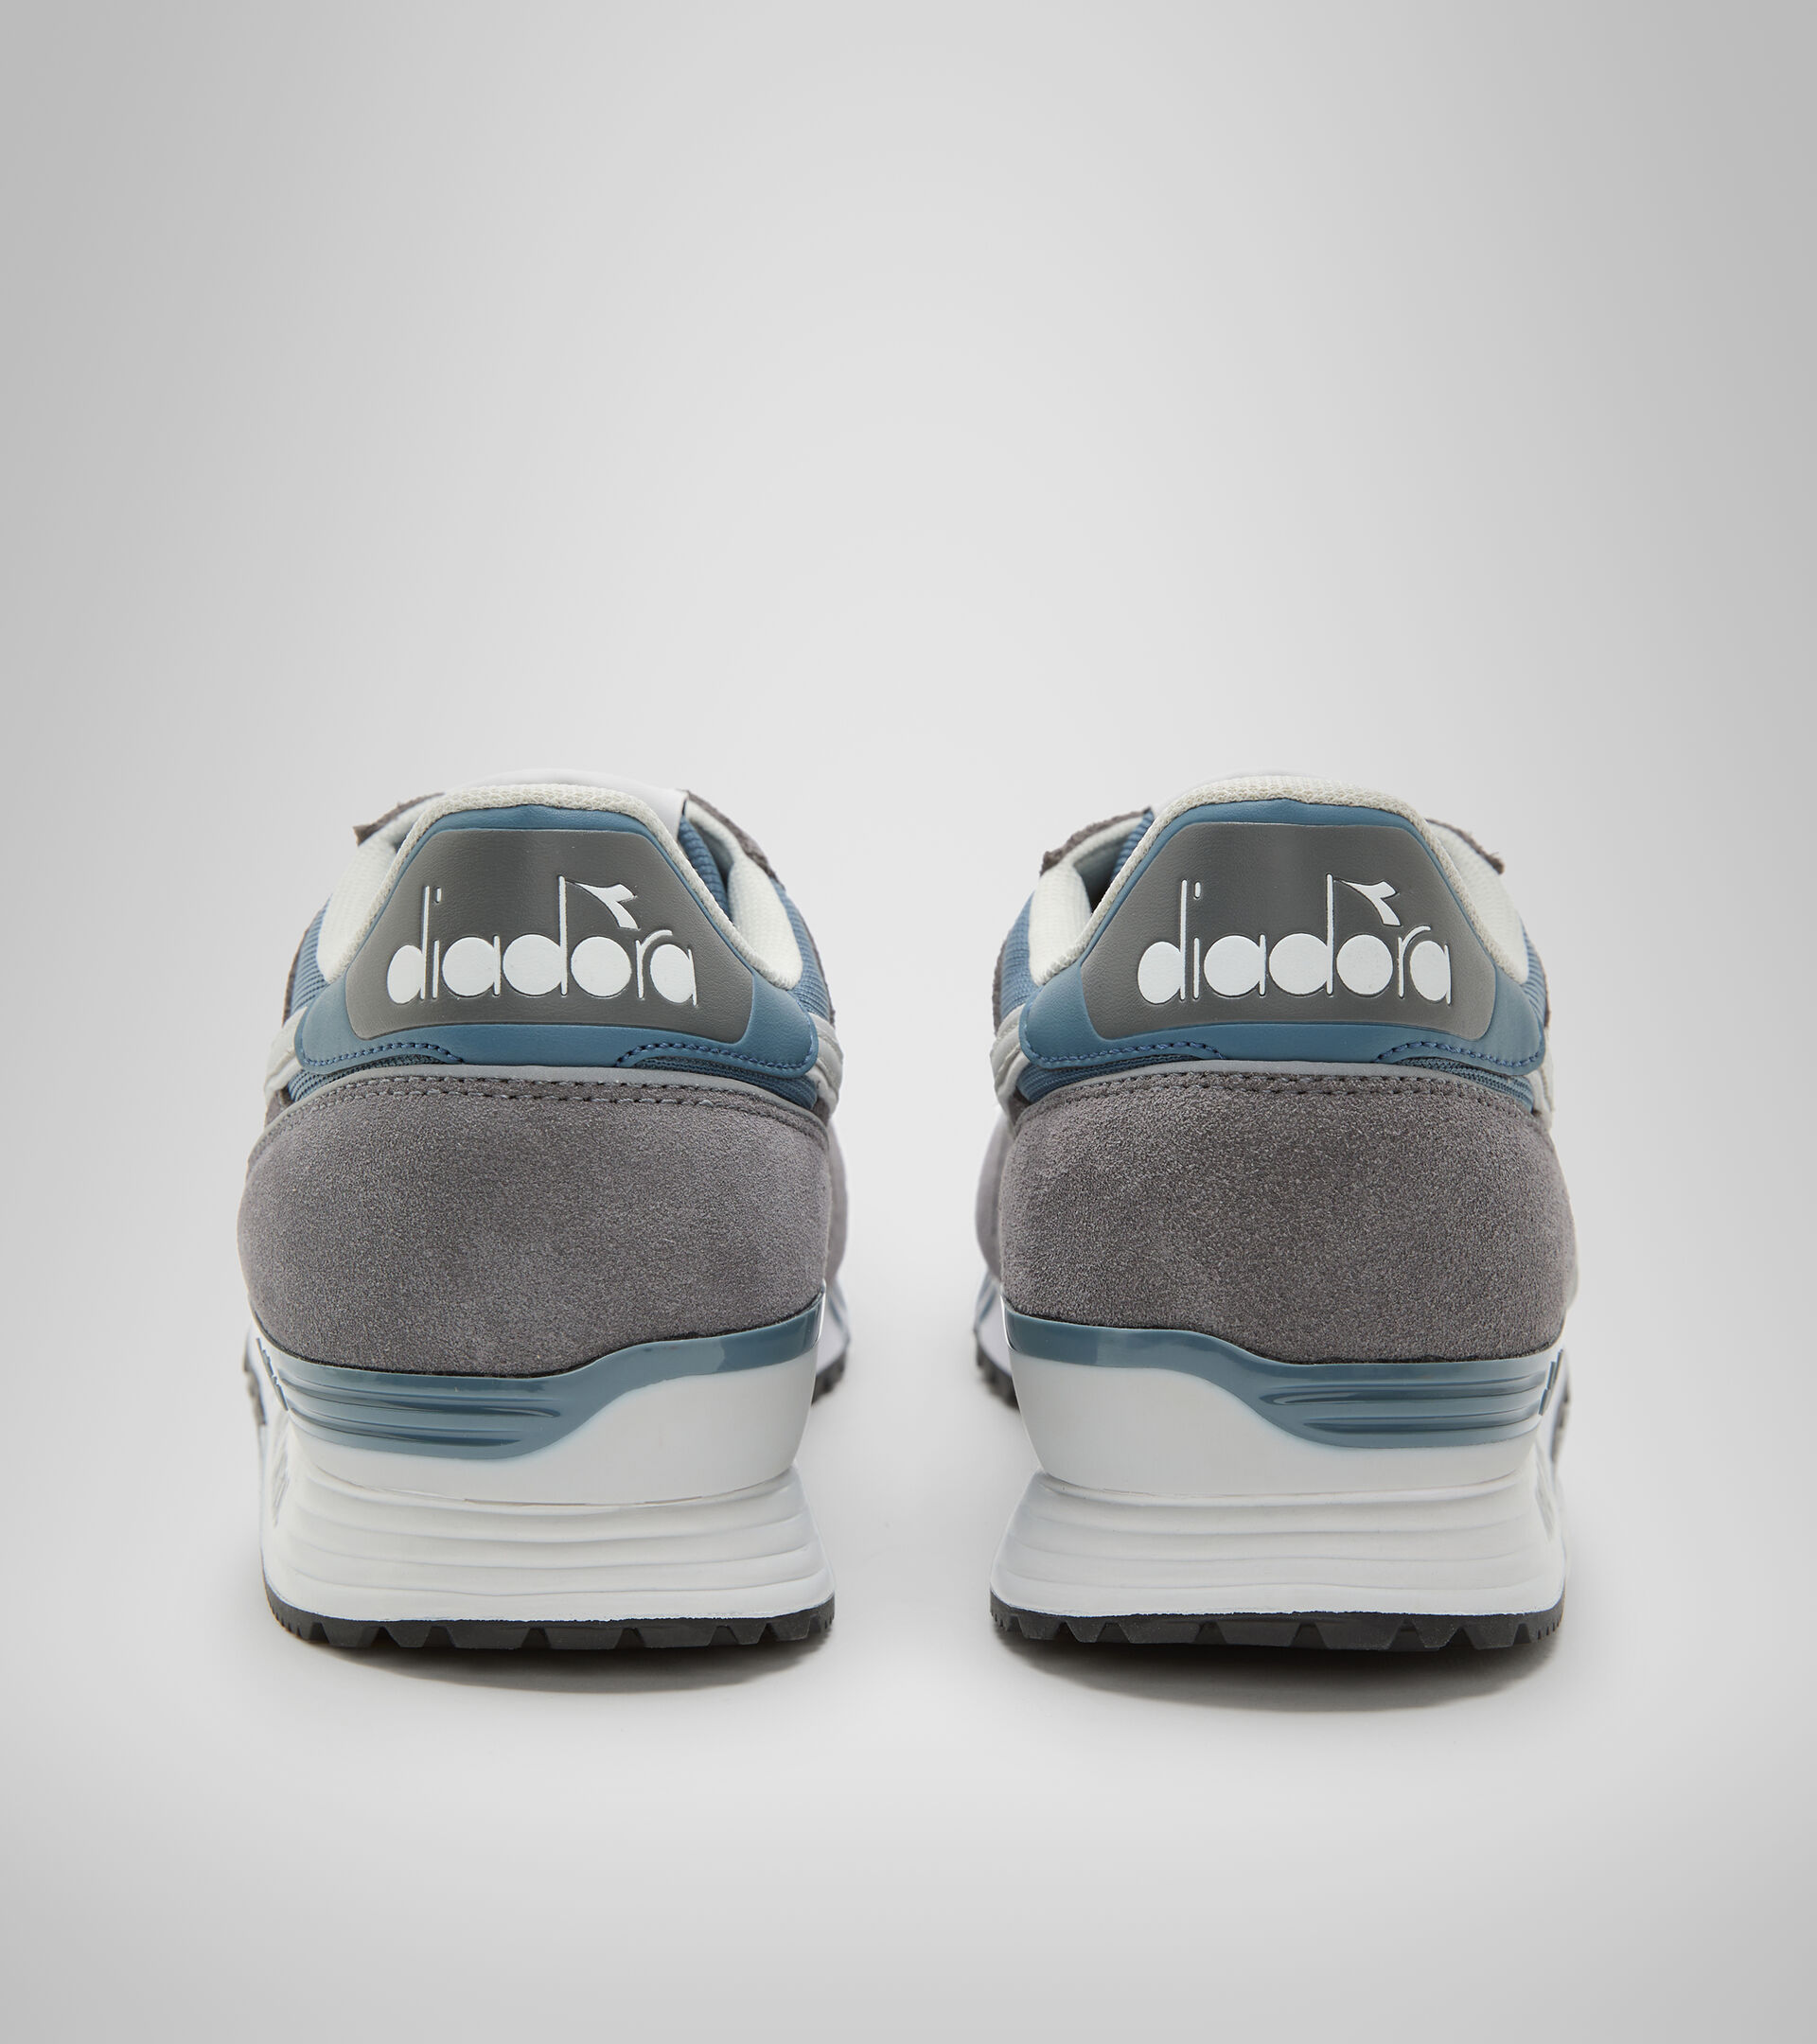 Chaussures de sport - Homme TITAN BLEU MIRAGE/GRIS ACIER - Diadora